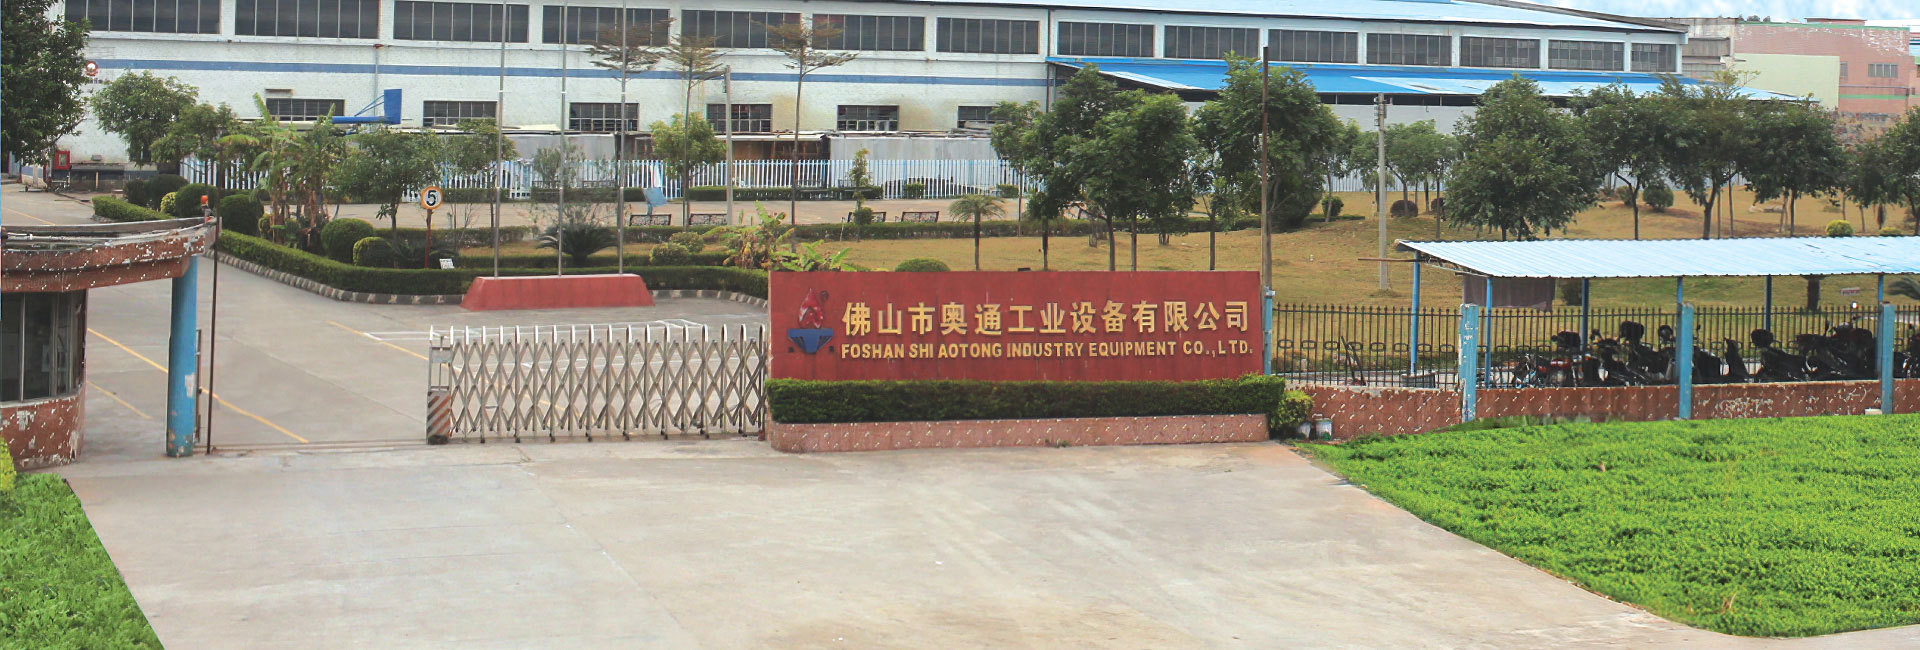 中國表面工程協會涂裝分會常務理事單位